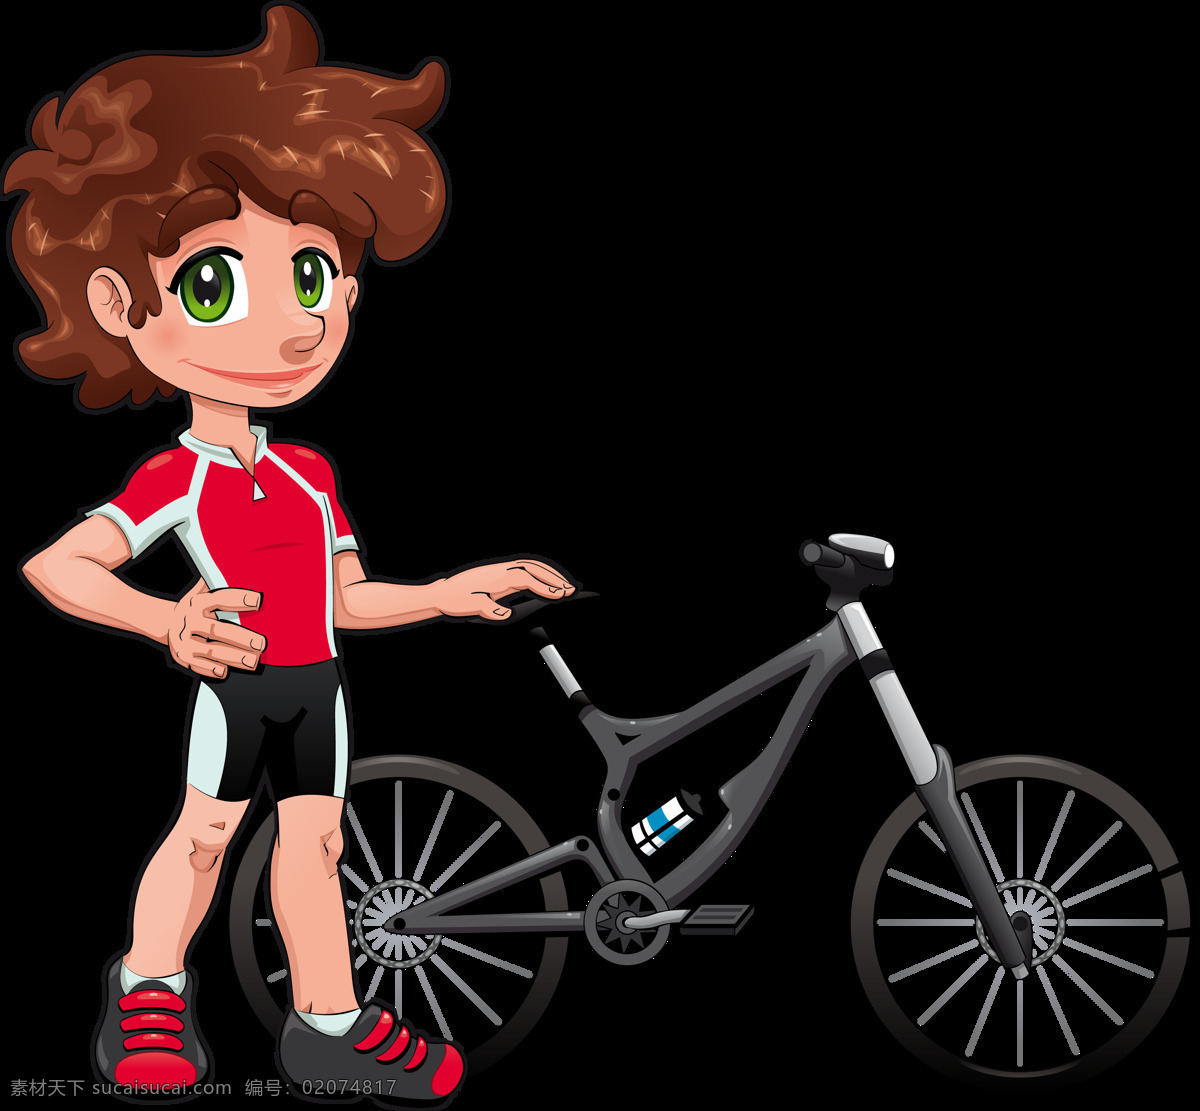 小孩 单车 自行车 插画 免 抠 透明 图 层 共享单车 女式单车 男式单车 电动车 绿色低碳 绿色环保 环保电动车 健身单车 摩拜 ofo单车 小蓝单车 双人单车 多人单车